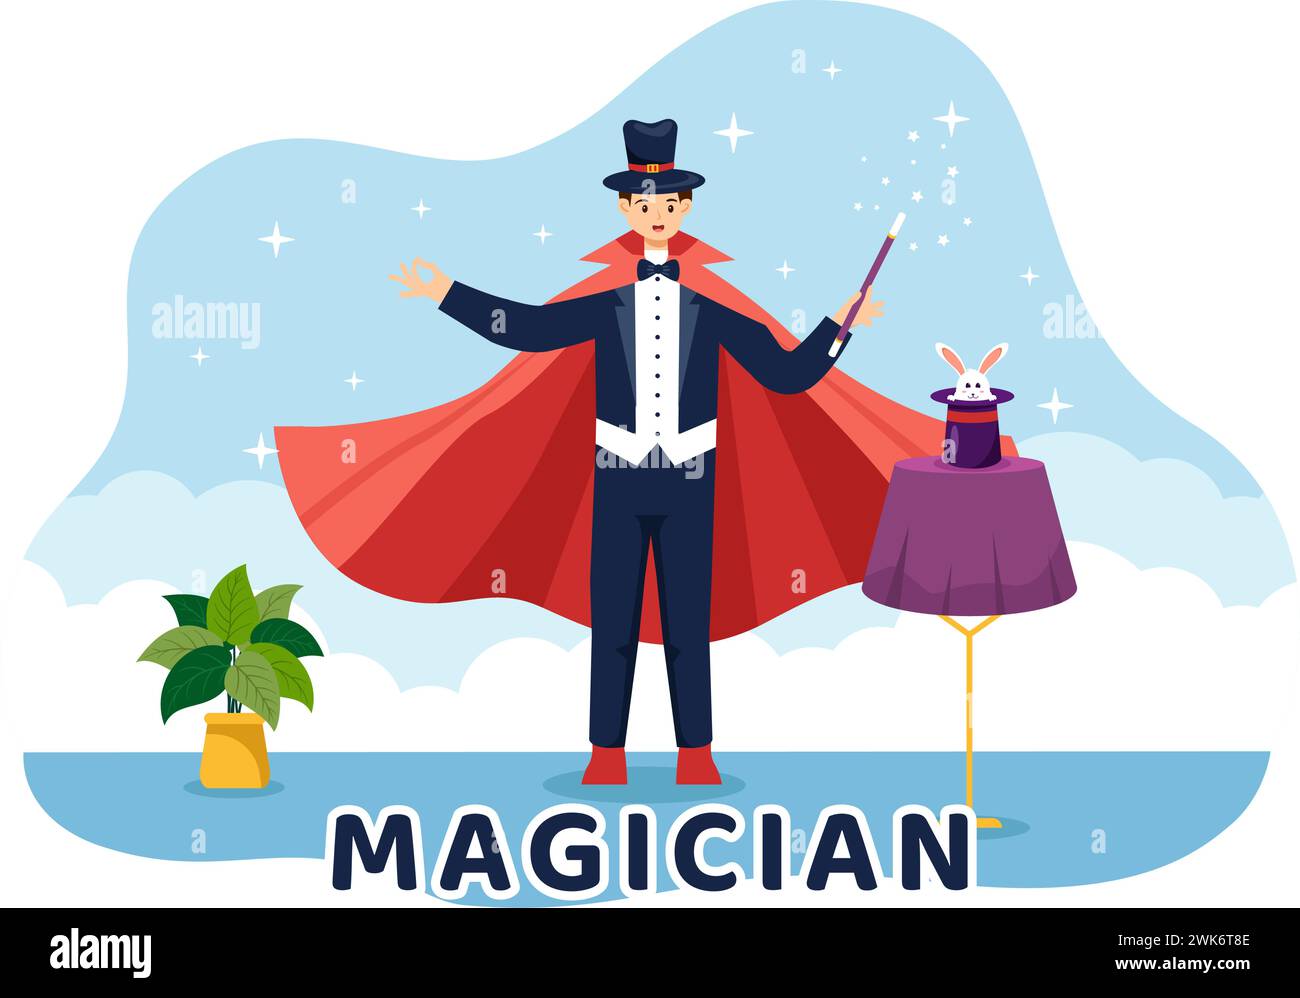 Magician Vector Illustration mit Illusionist, der Tricks beschwört und einen Zauberstab über seinem geheimnisvollen Hut auf einer Bühne in flachem Cartoon Hintergrund winkt Stock Vektor